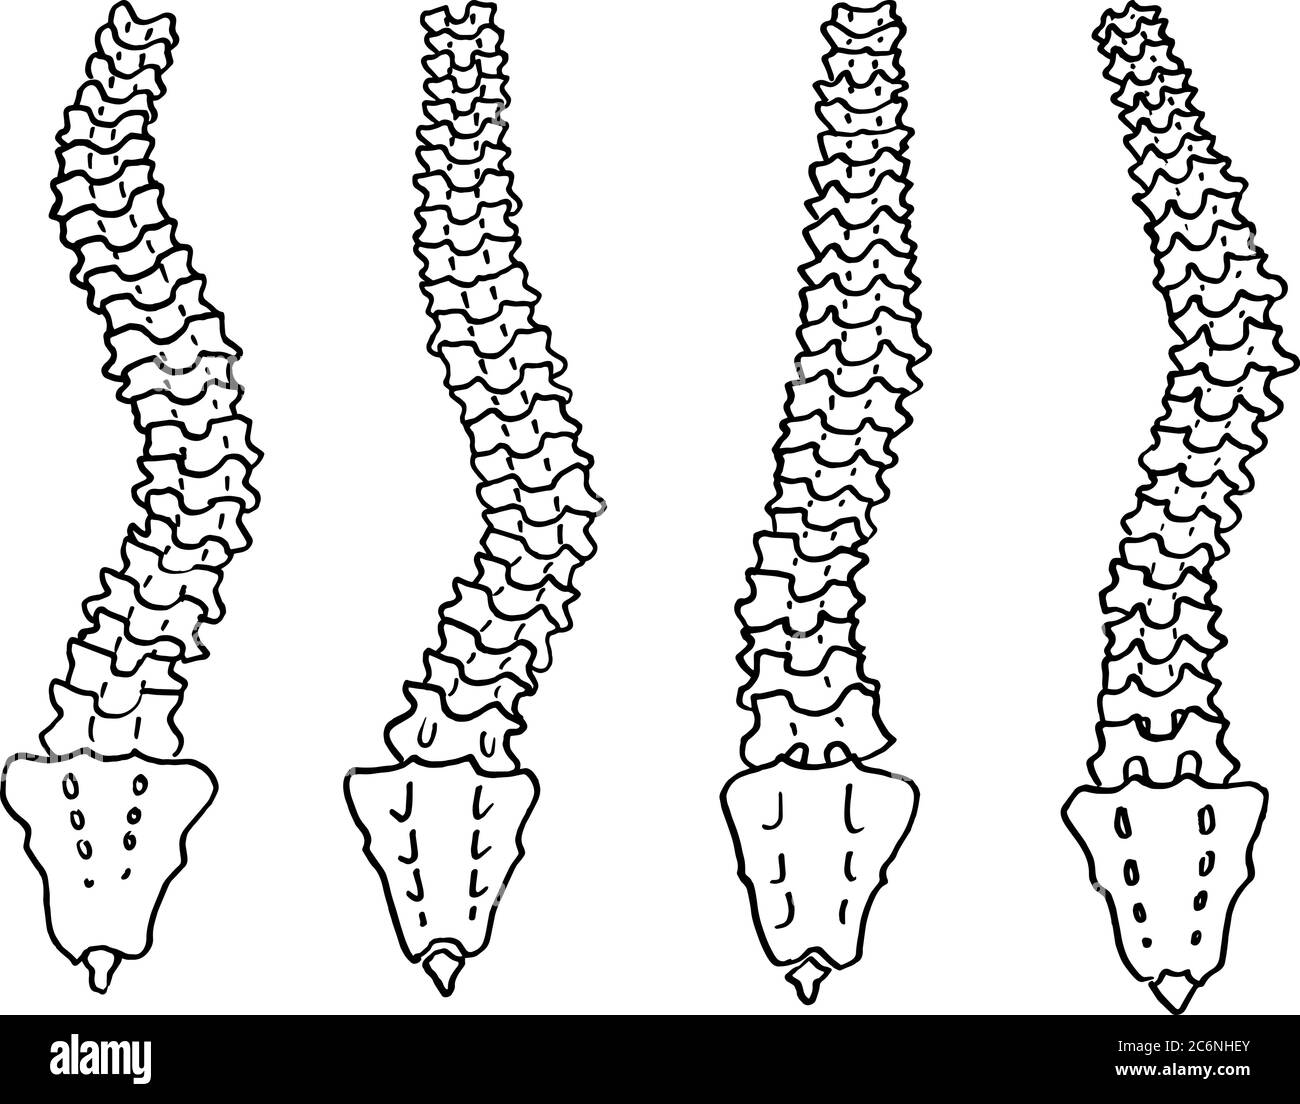 Contorno vettore disegno di contorno dello scheletro umano della colonna vertebrale. Modello modificabile per la progettazione medica Illustrazione Vettoriale